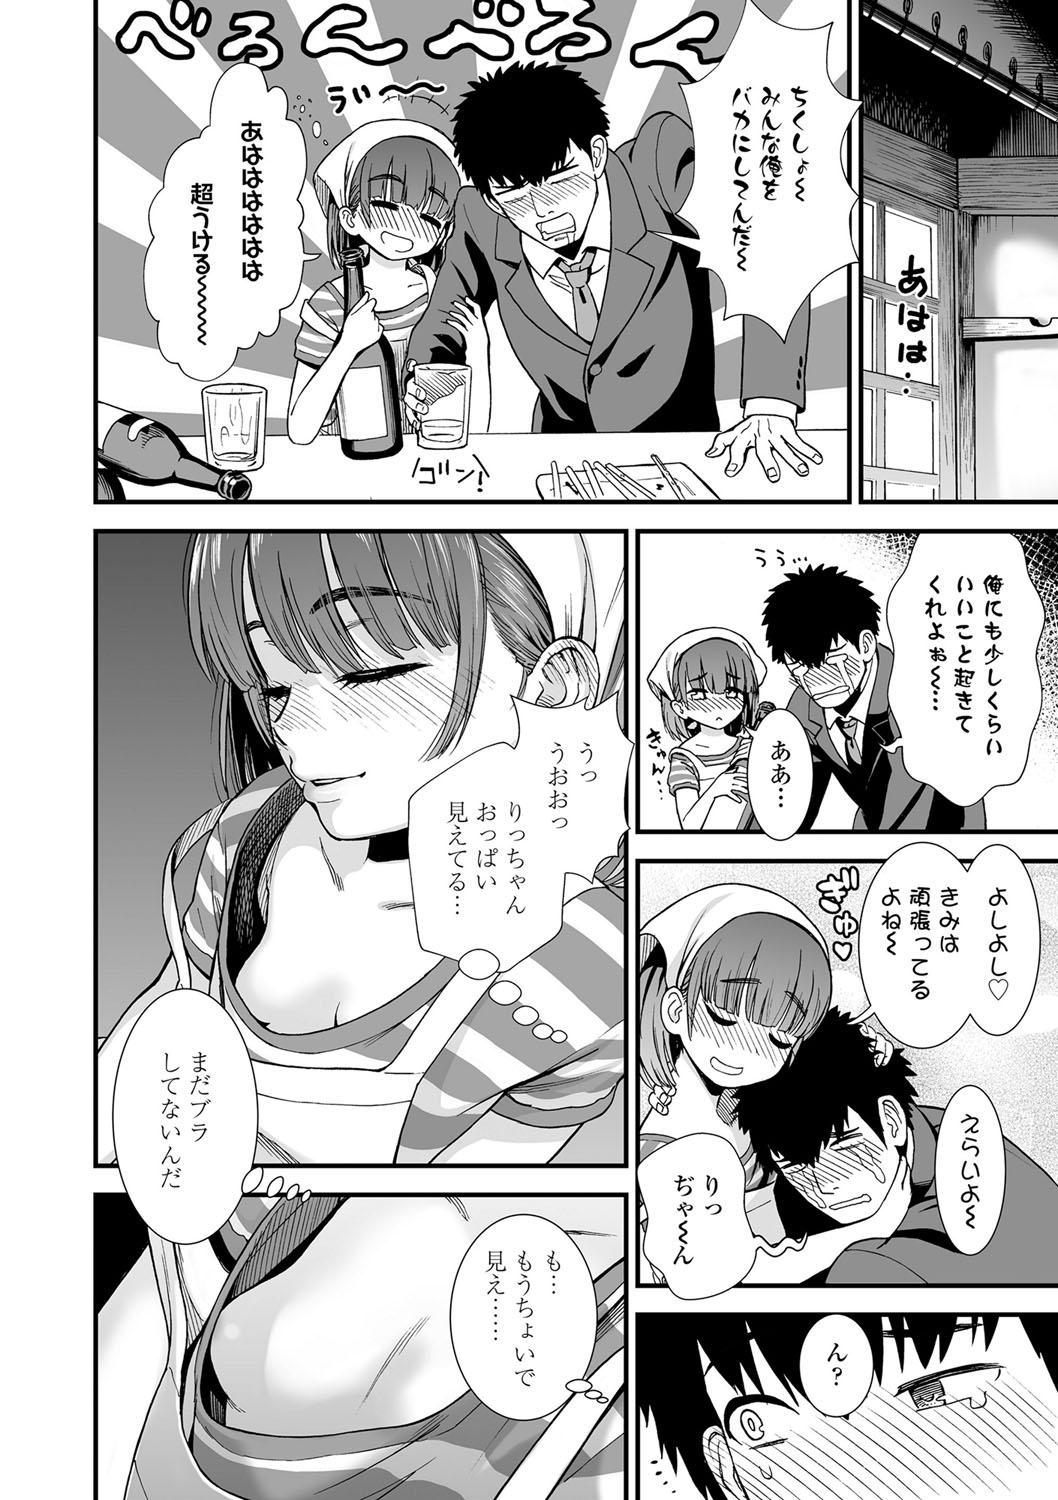 Rough Ore wa Kuzu dakara koso Sukuwareru Kenri ga Aru! Muscles - Page 9